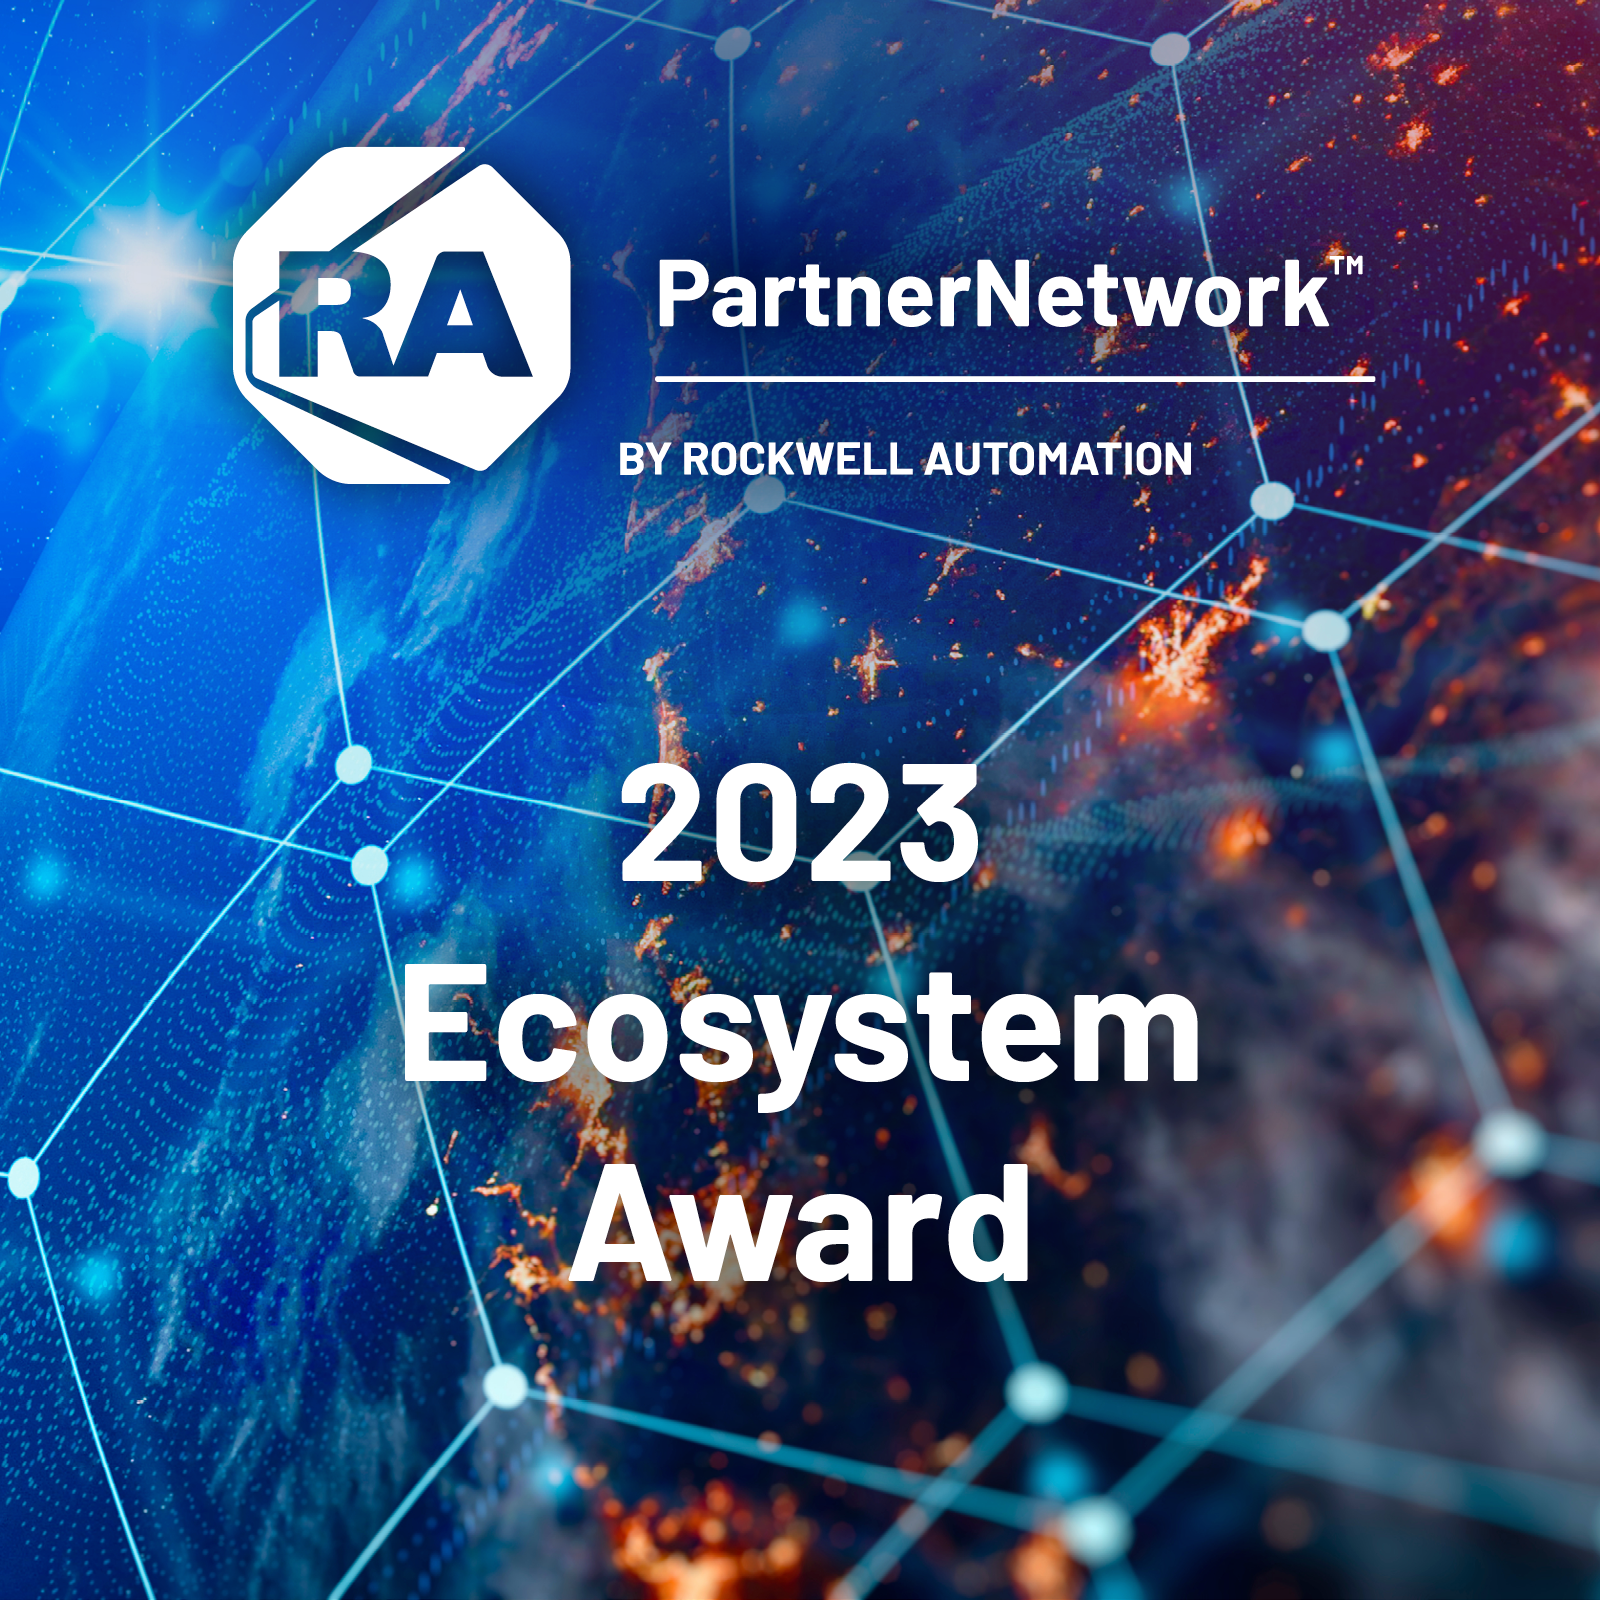 Prix Rockwell Automation Ecosystem 2023 dans le cadre de la conférence PartnerNetwork